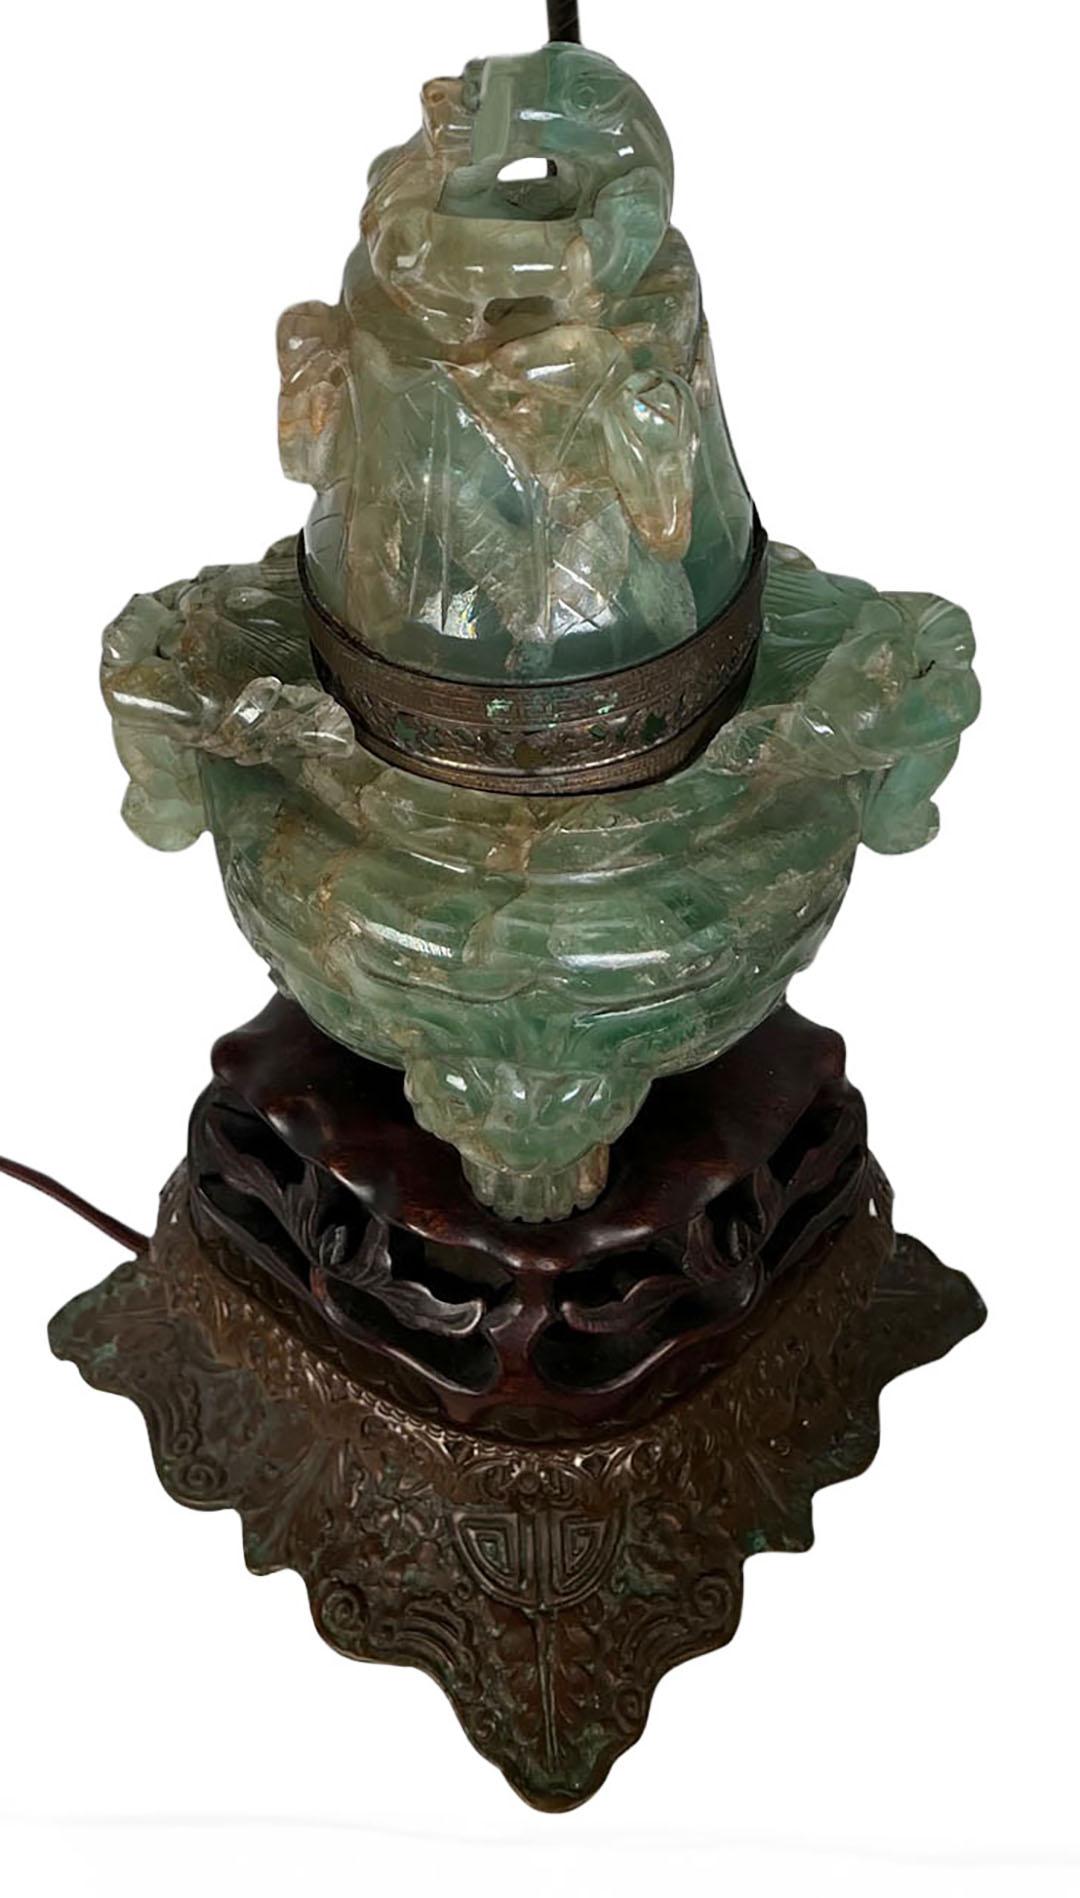 Eine chinesische Tischlampe aus geschnitztem grünem Fluorit aus den 1920er Jahren. Der Deckel lässt sich abnehmen und gibt den Blick auf eine Glühbirne im Inneren frei. Die Vase und der Deckel sind dreizehneinhalb Meter hoch.